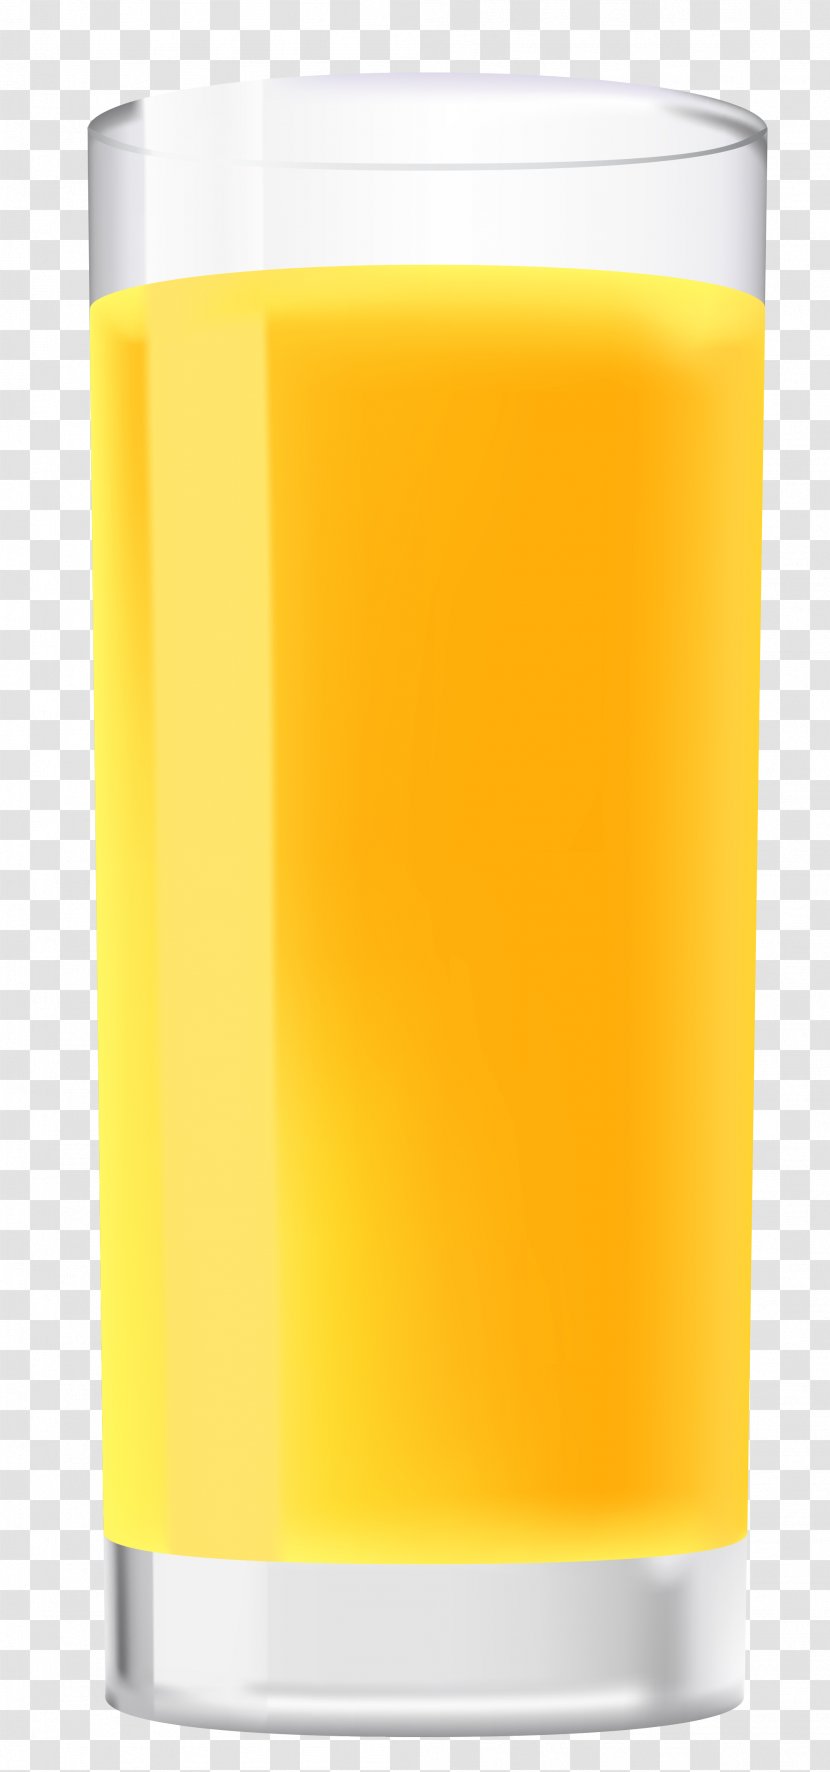 Orange Juice Harvey Wallbanger Drink - Glass Of Clipart Image Transparent PNG